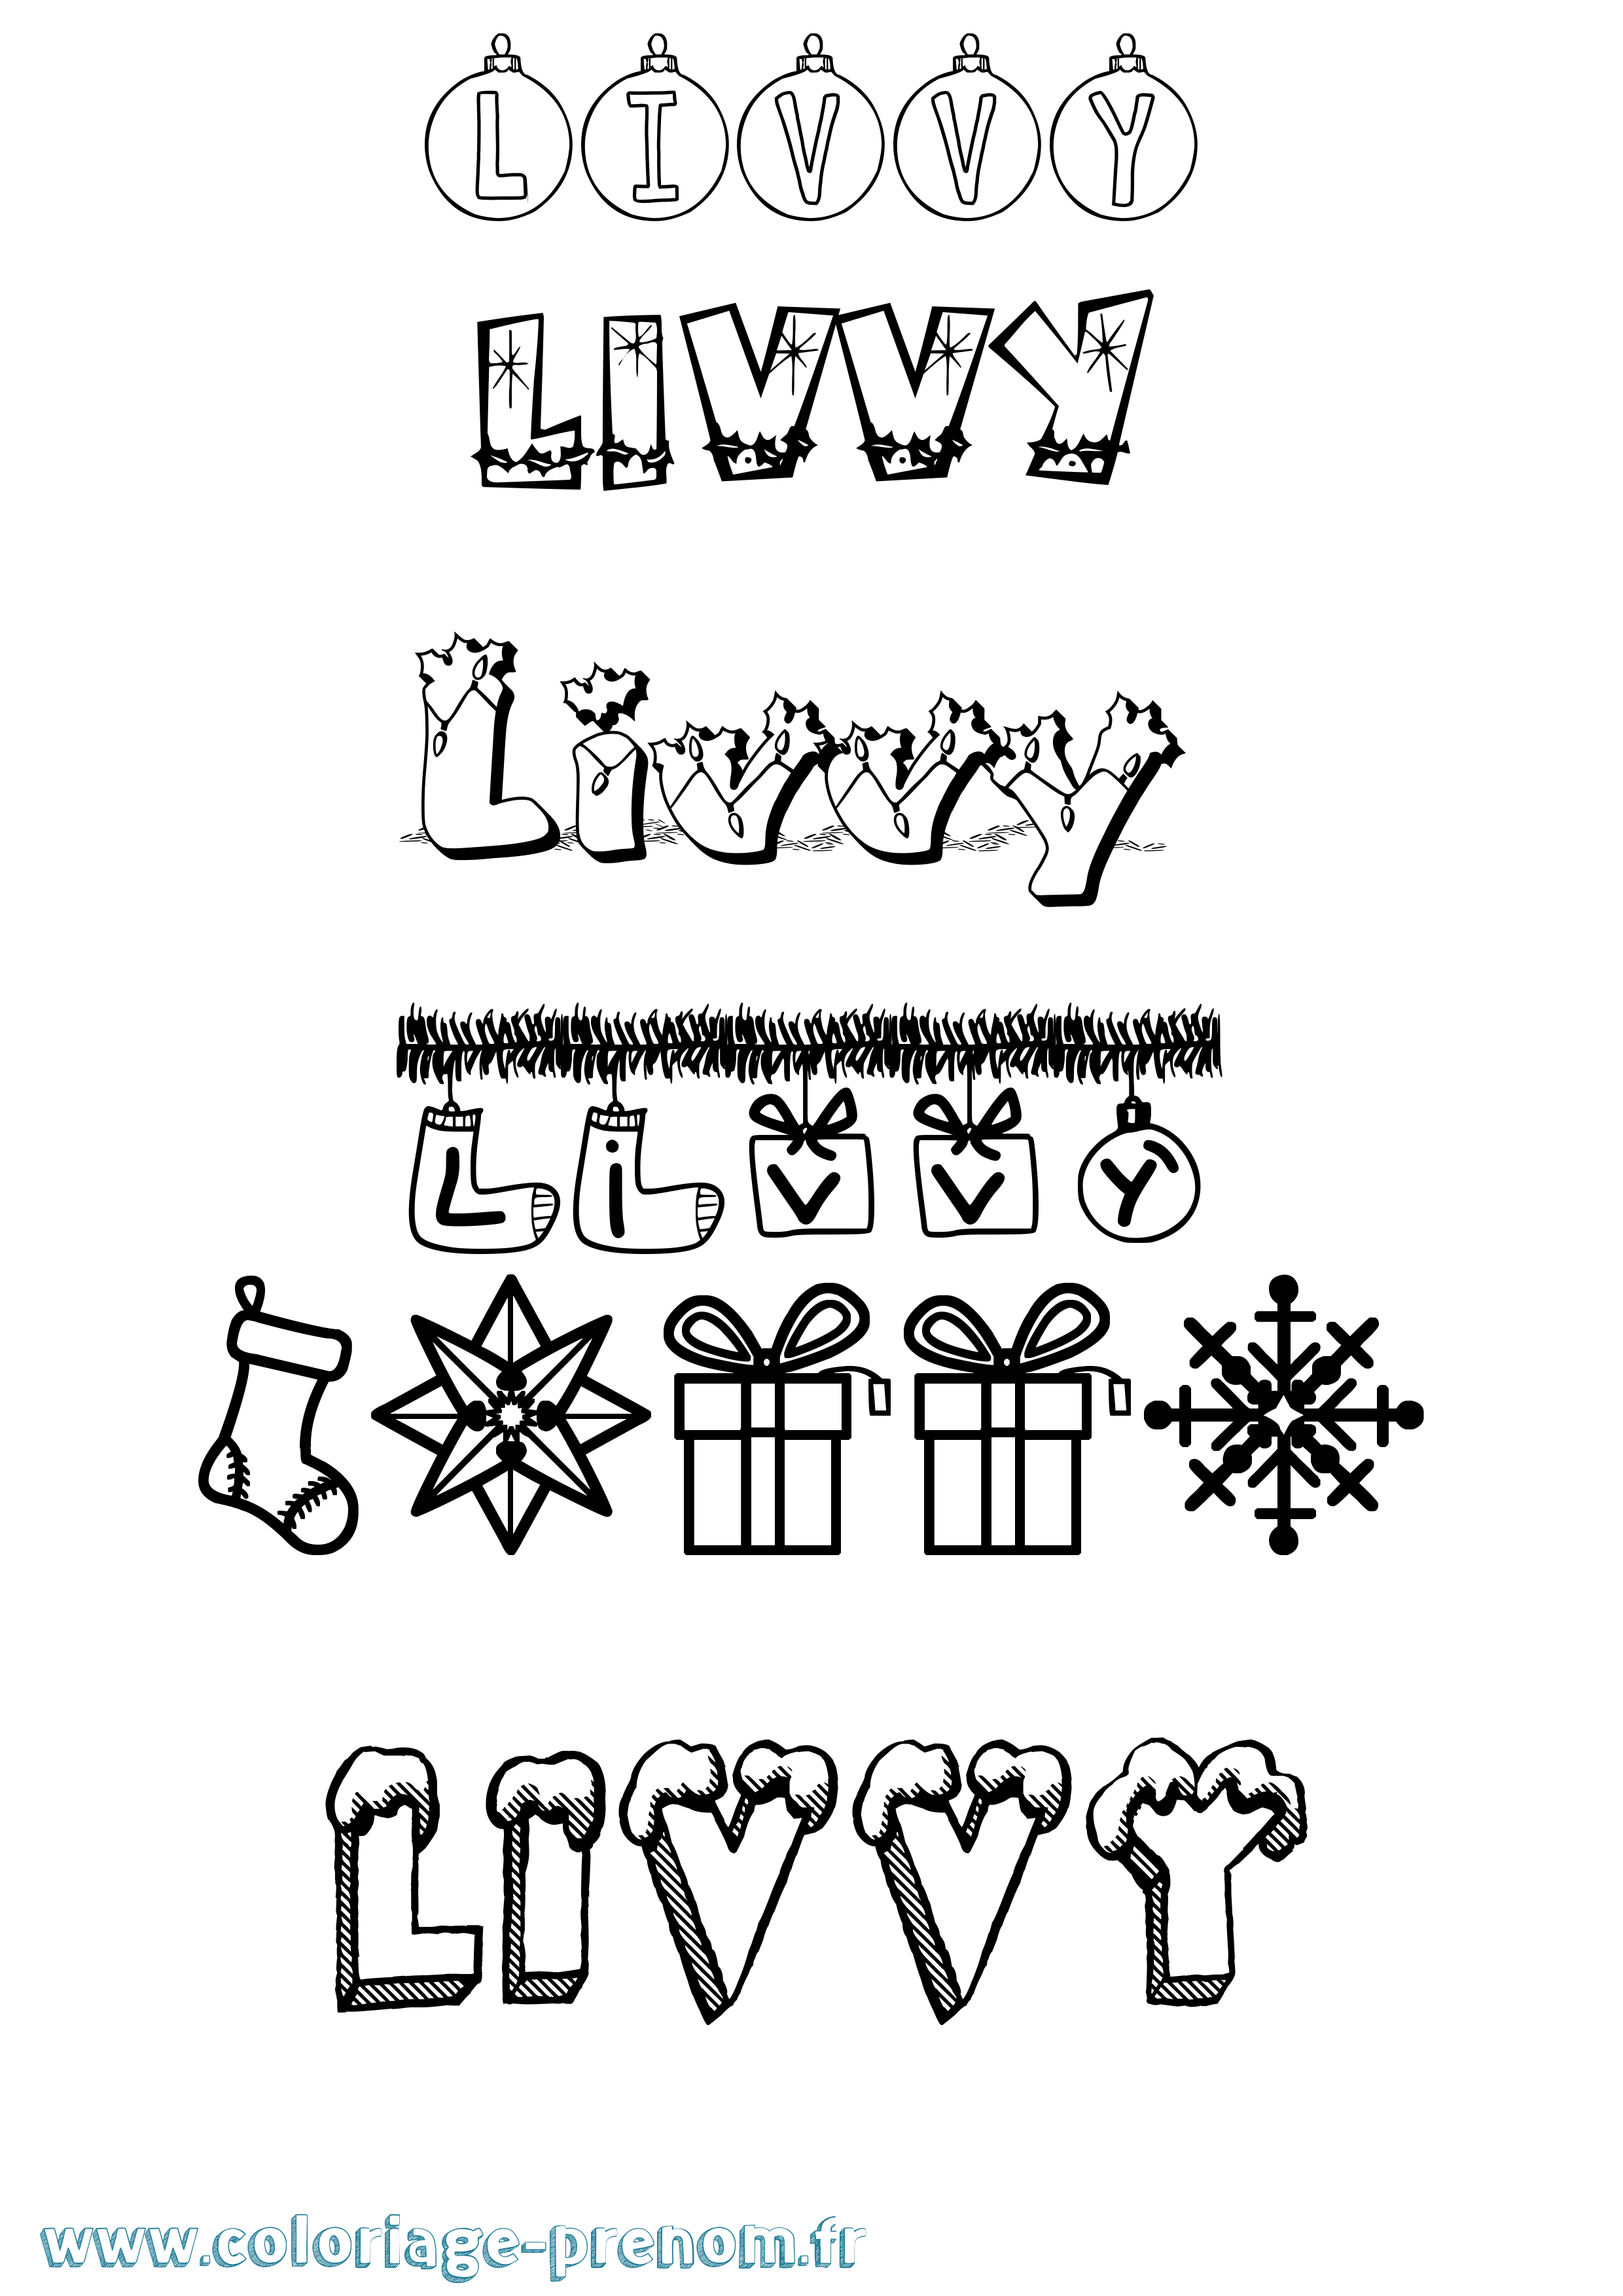 Coloriage prénom Livvy Noël